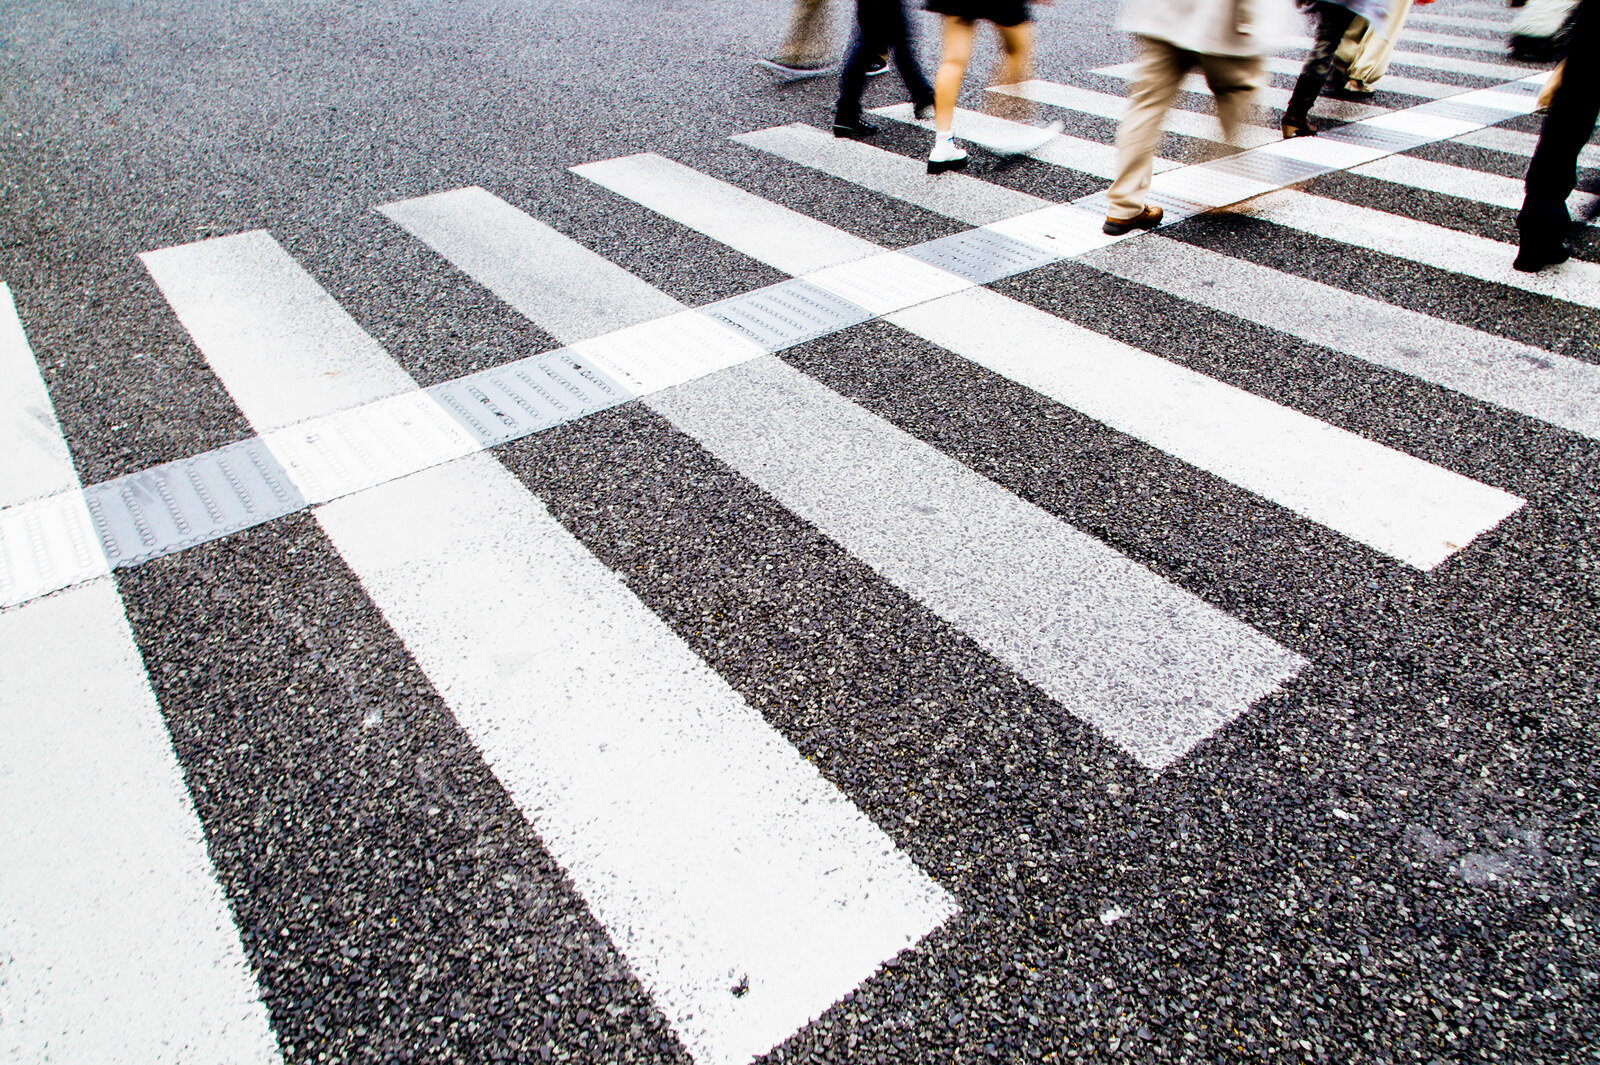 Okinawa-crosswalk.jpg